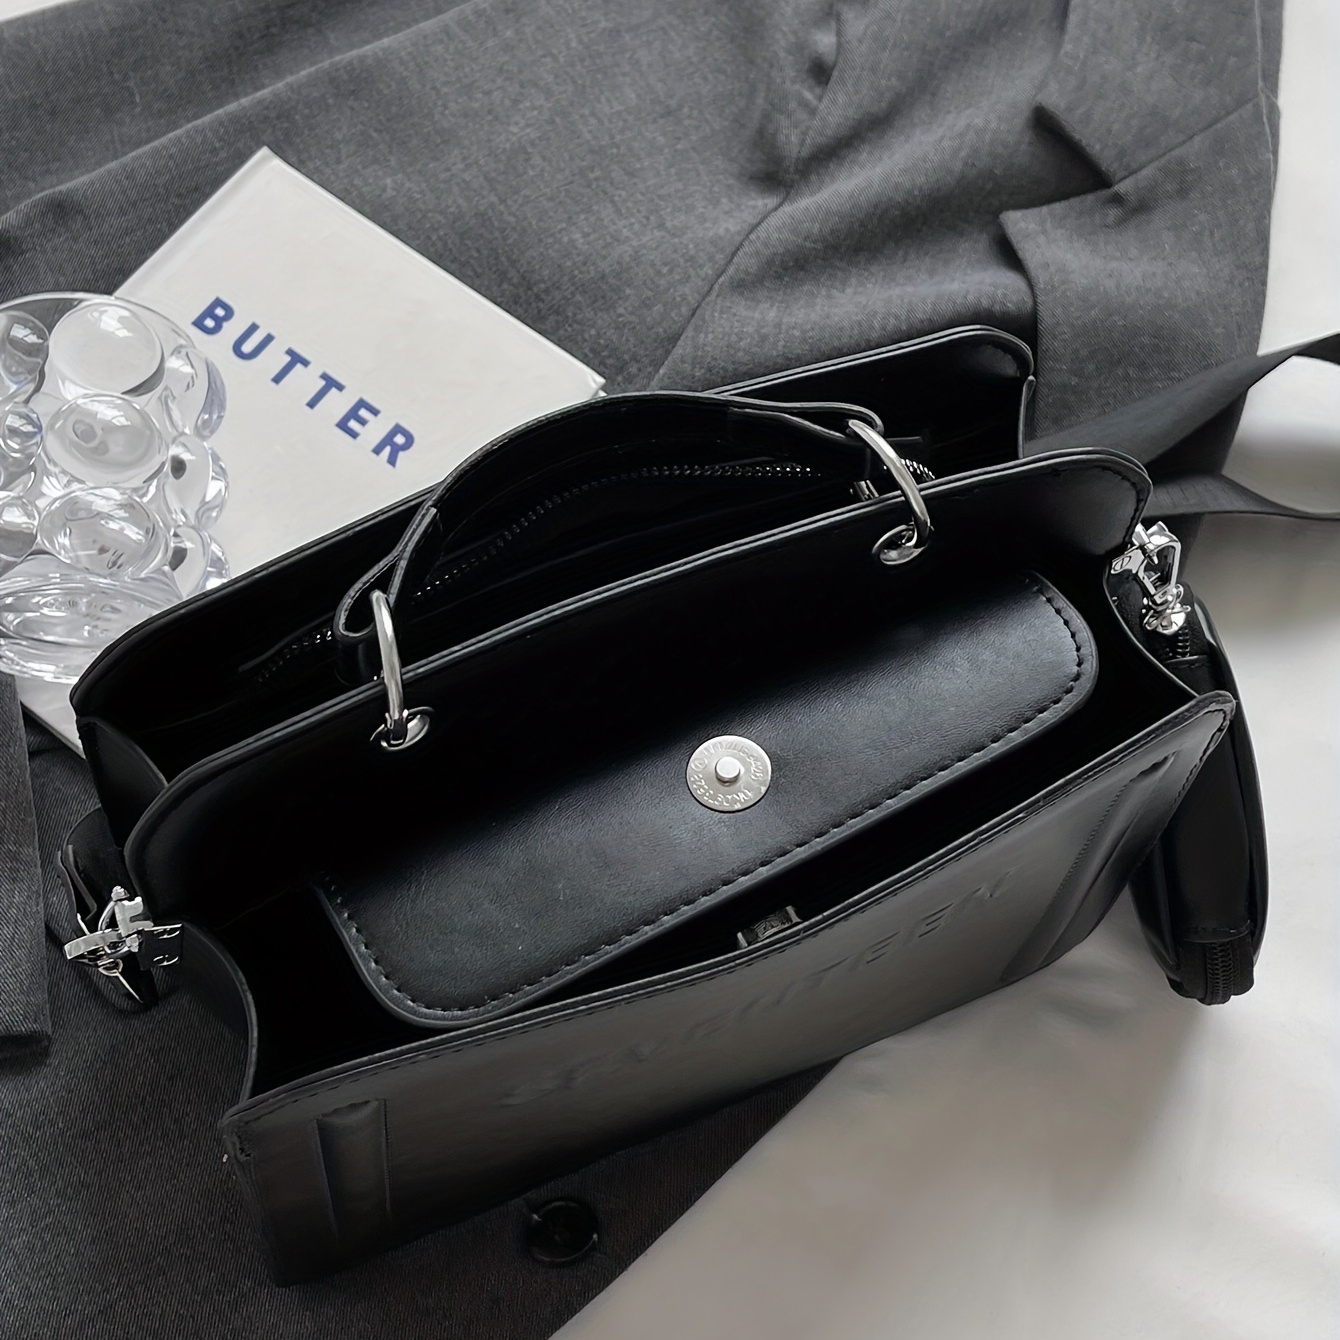 Women's Letter Embossed Handbag Set, Luxury Square Crossbody Bag